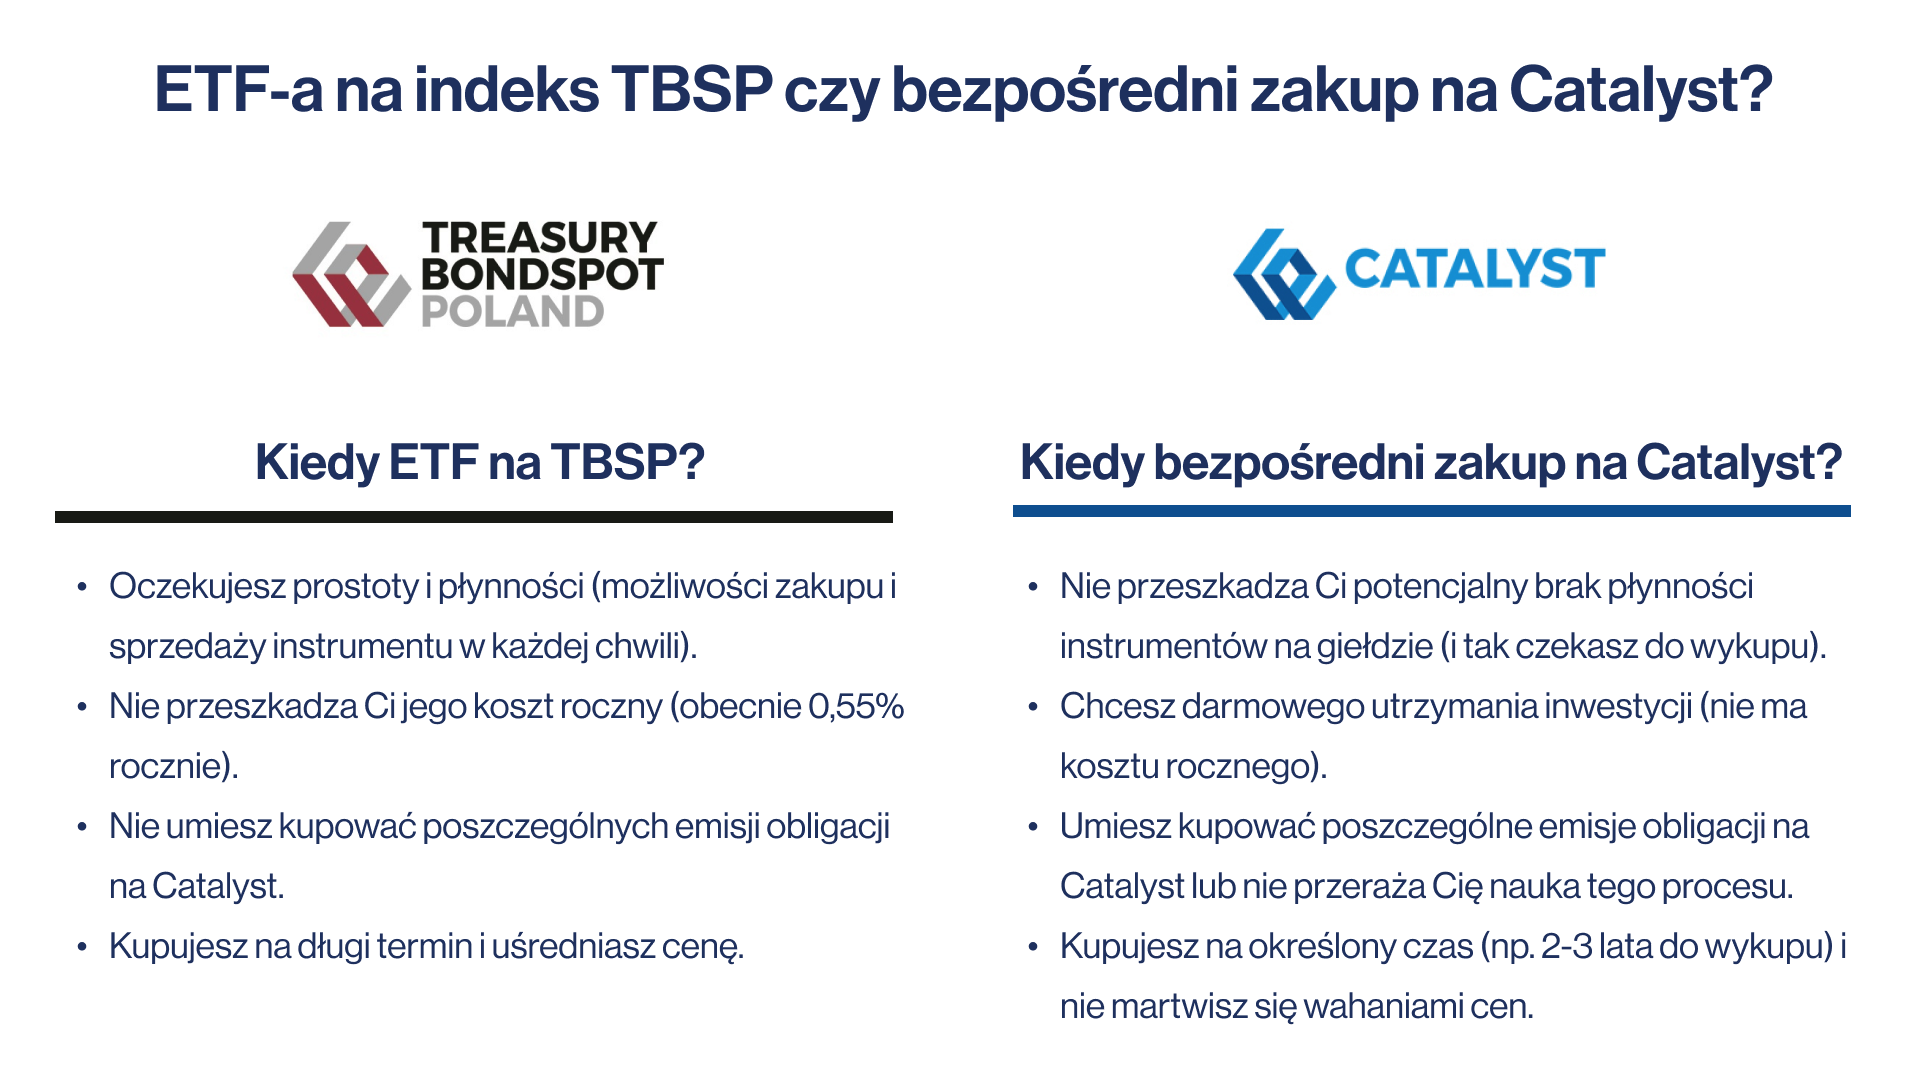 Obligacje antyinflacyjne kontra obligacje staloprocentowe poownanie ETF na TBSP czy bezposredni zakup hurtowych